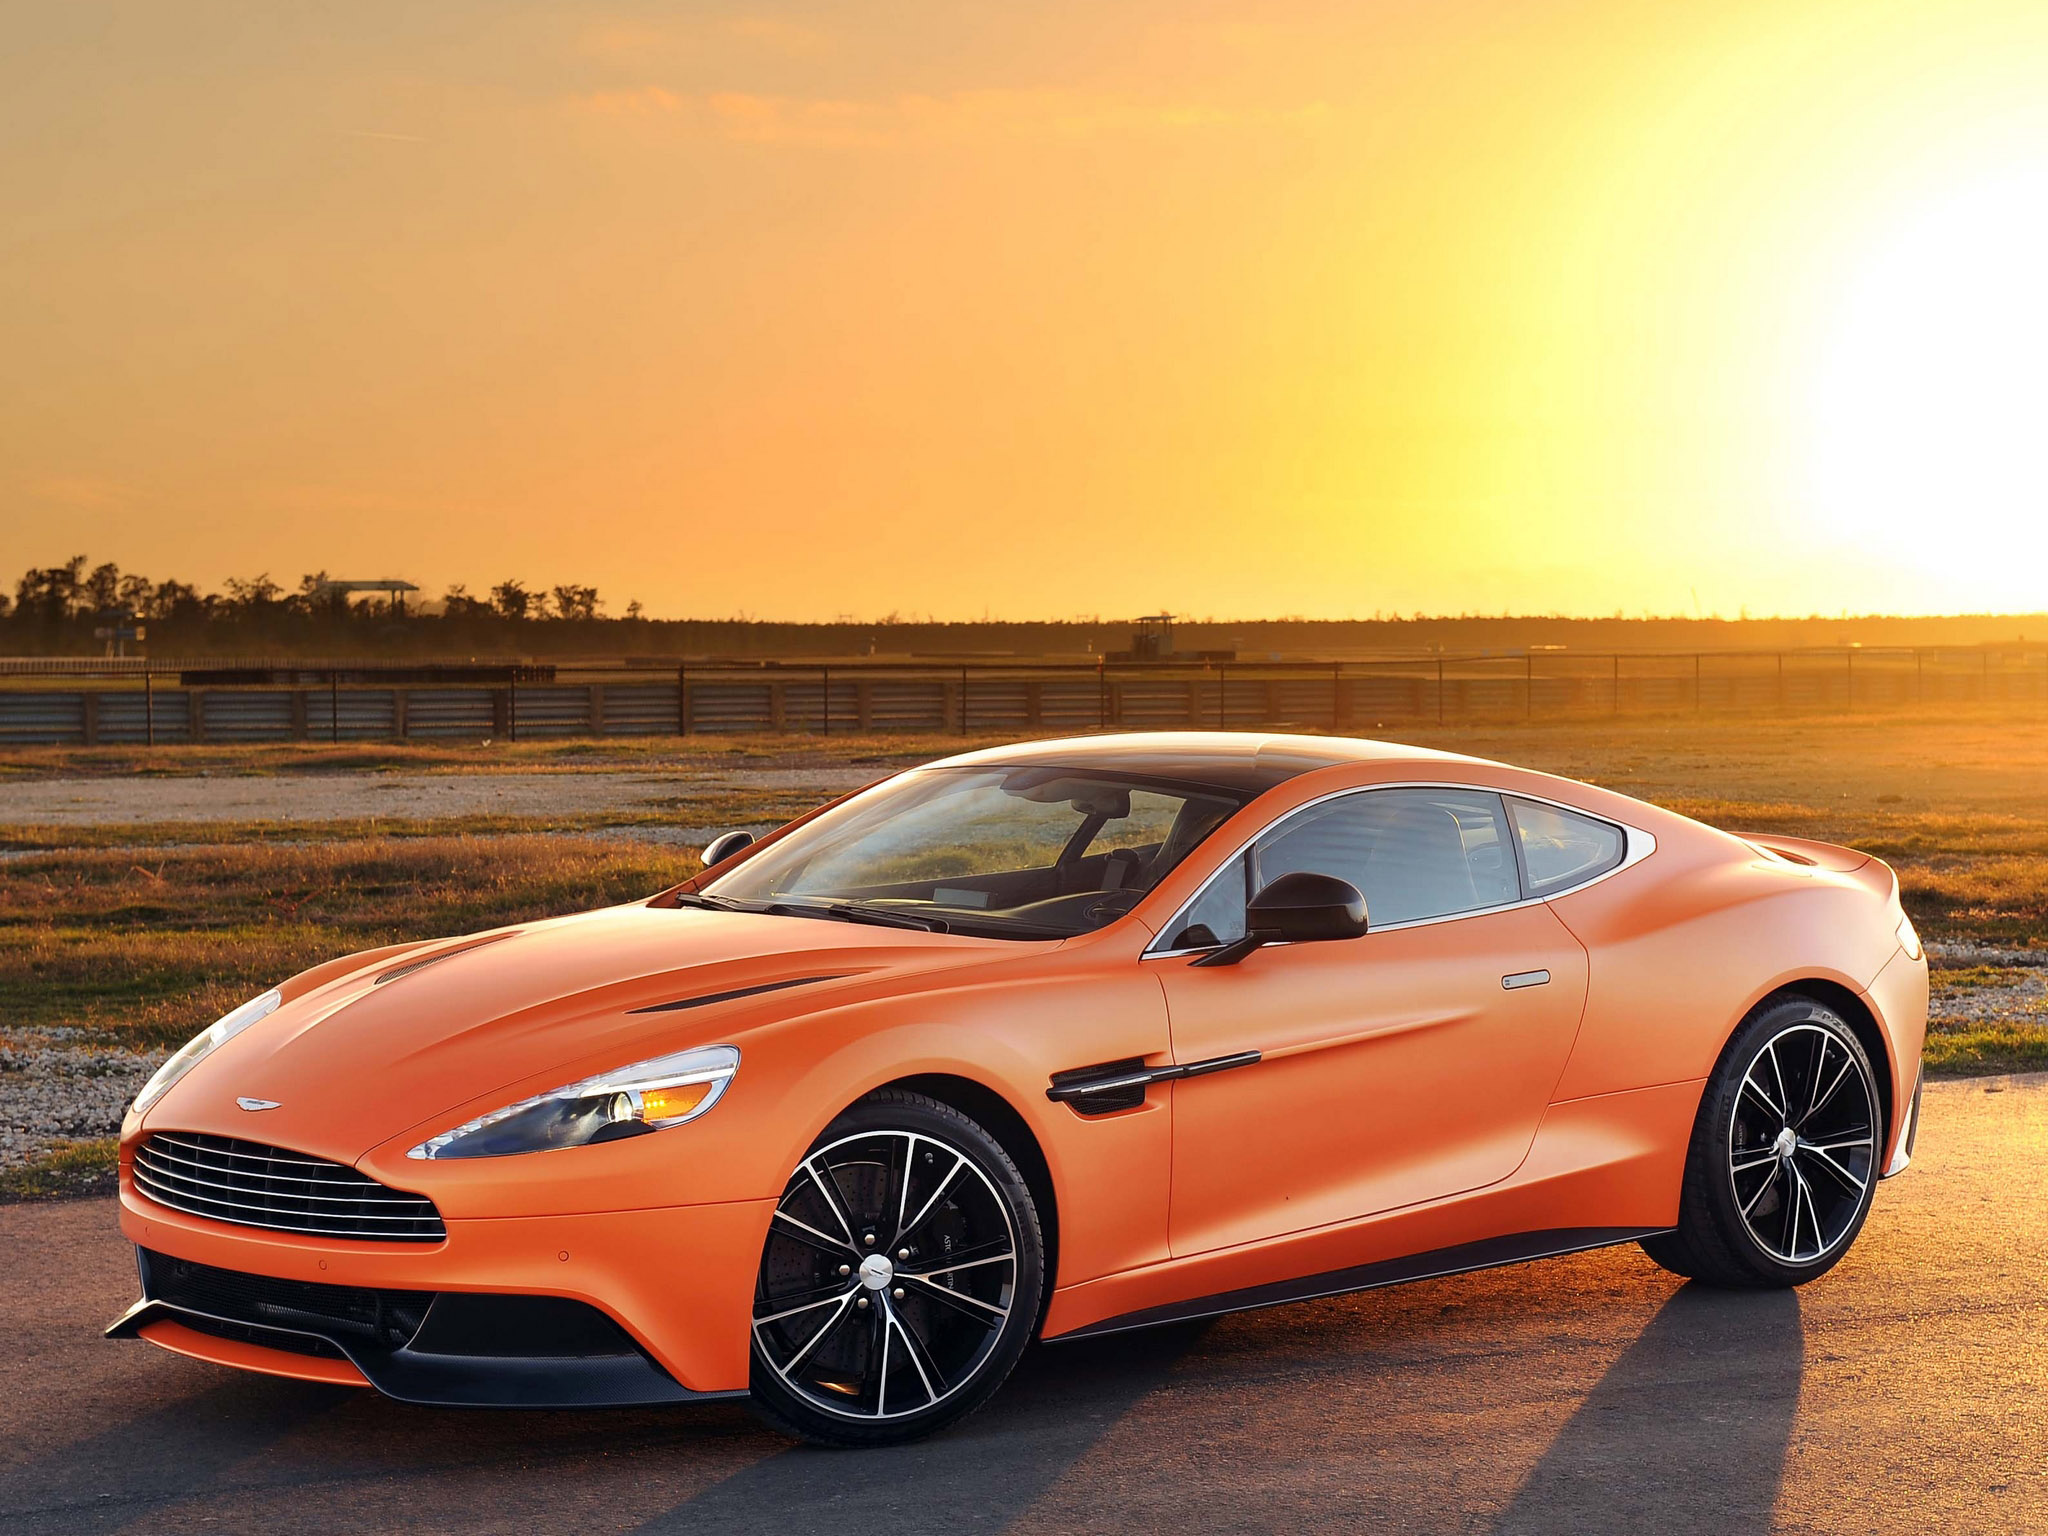 Descarga gratuita de fondo de pantalla para móvil de Aston Martin, Coche, Atardecer, Vehículos, Aston Martin Vanquish, Coche Naranja.